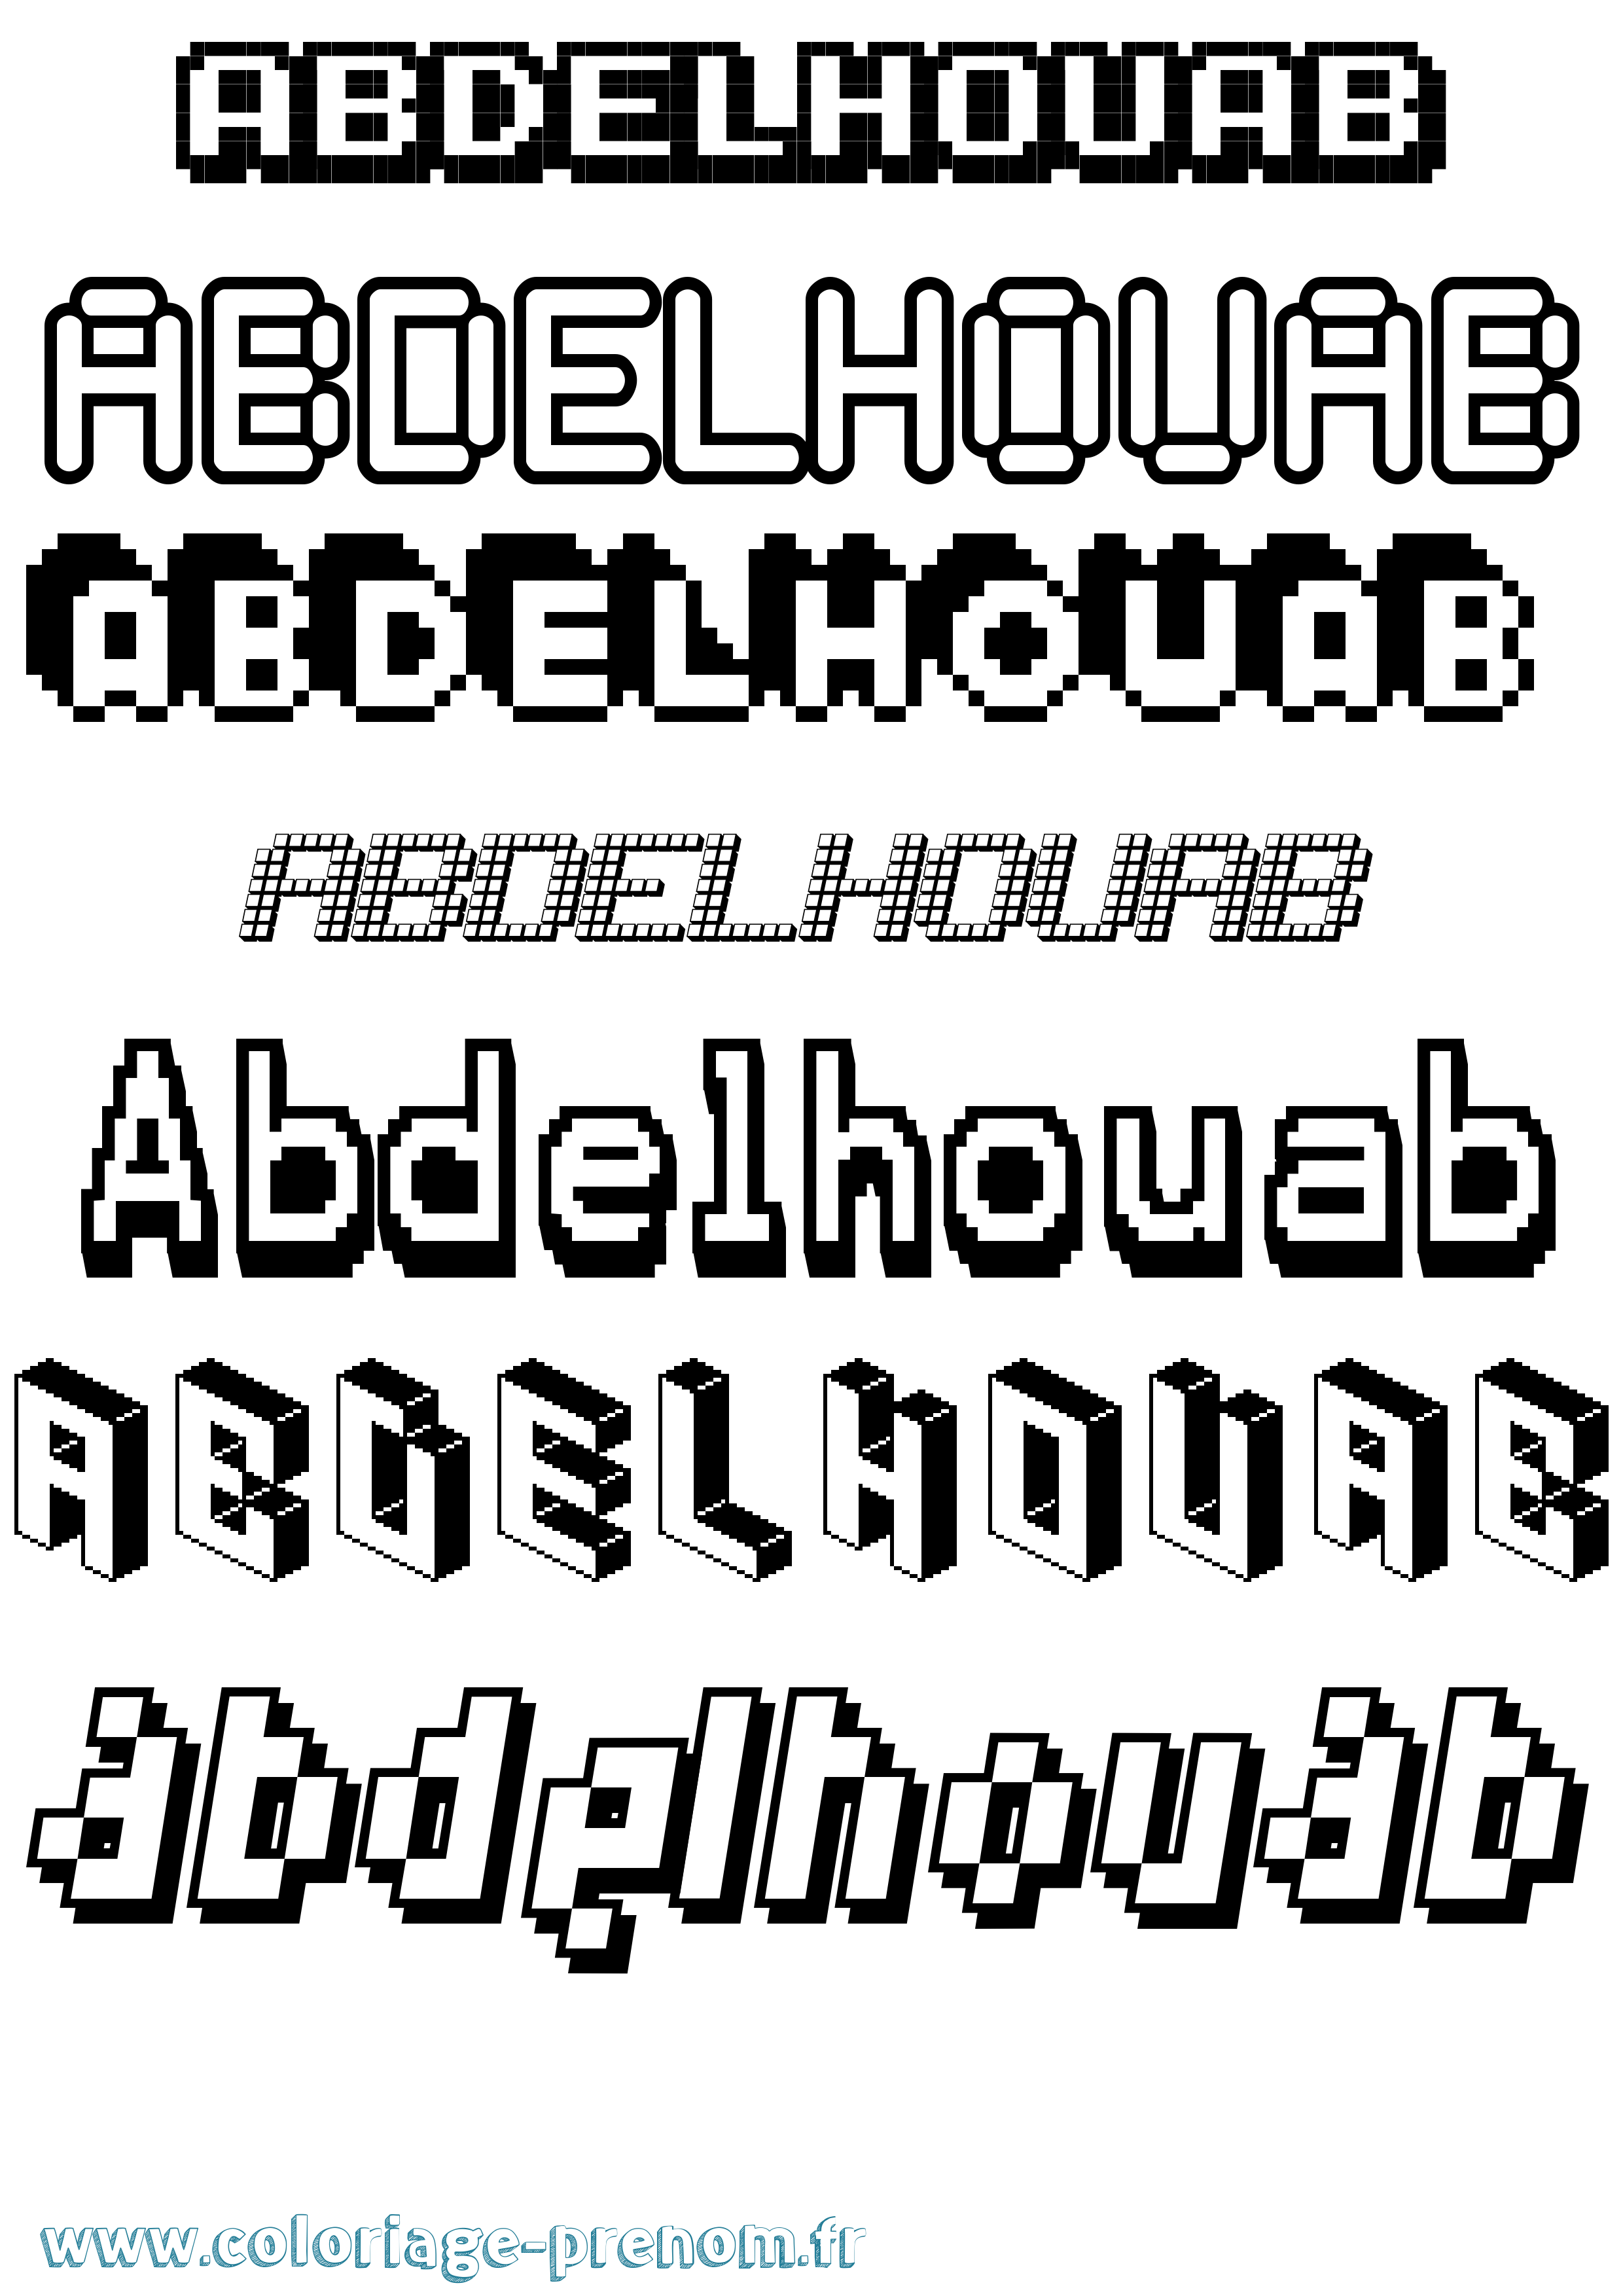 Coloriage prénom Abdelhouab Pixel